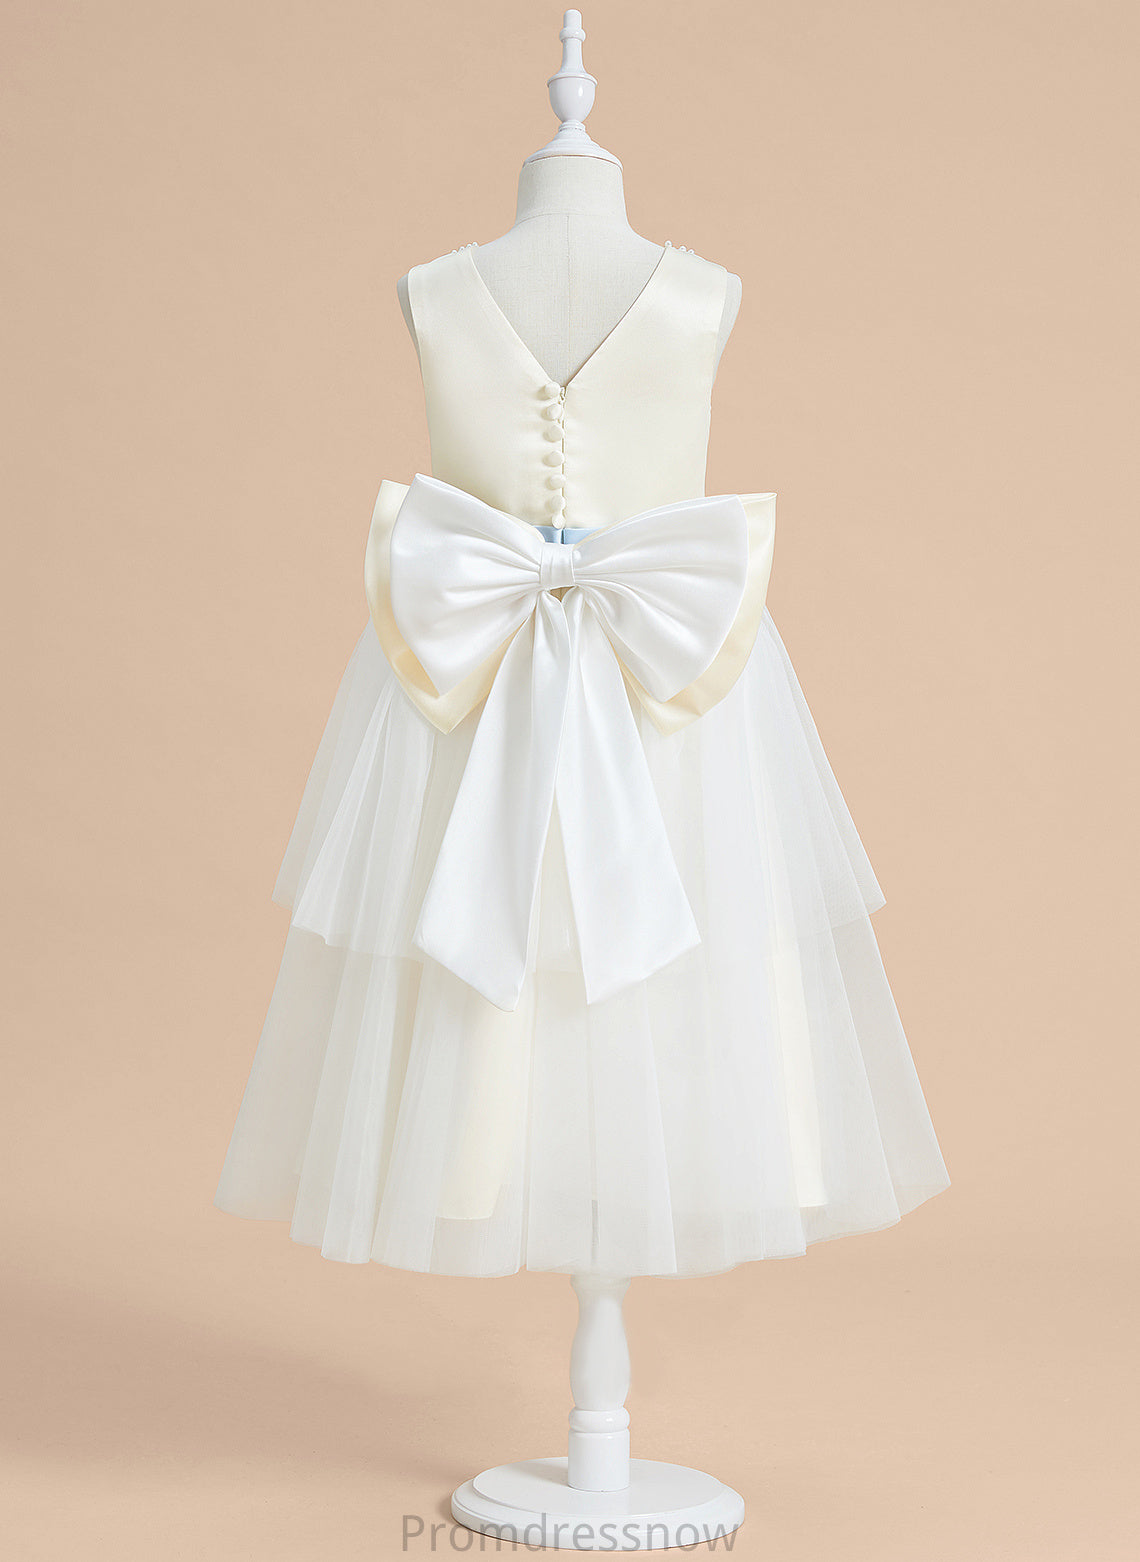 A-Line Sash/Beading/Bow(s) With Flower Girl Dresses Girl Sleeveless Audrey - Flower Satin/Tulle Dress Scoop Neck Tea-length